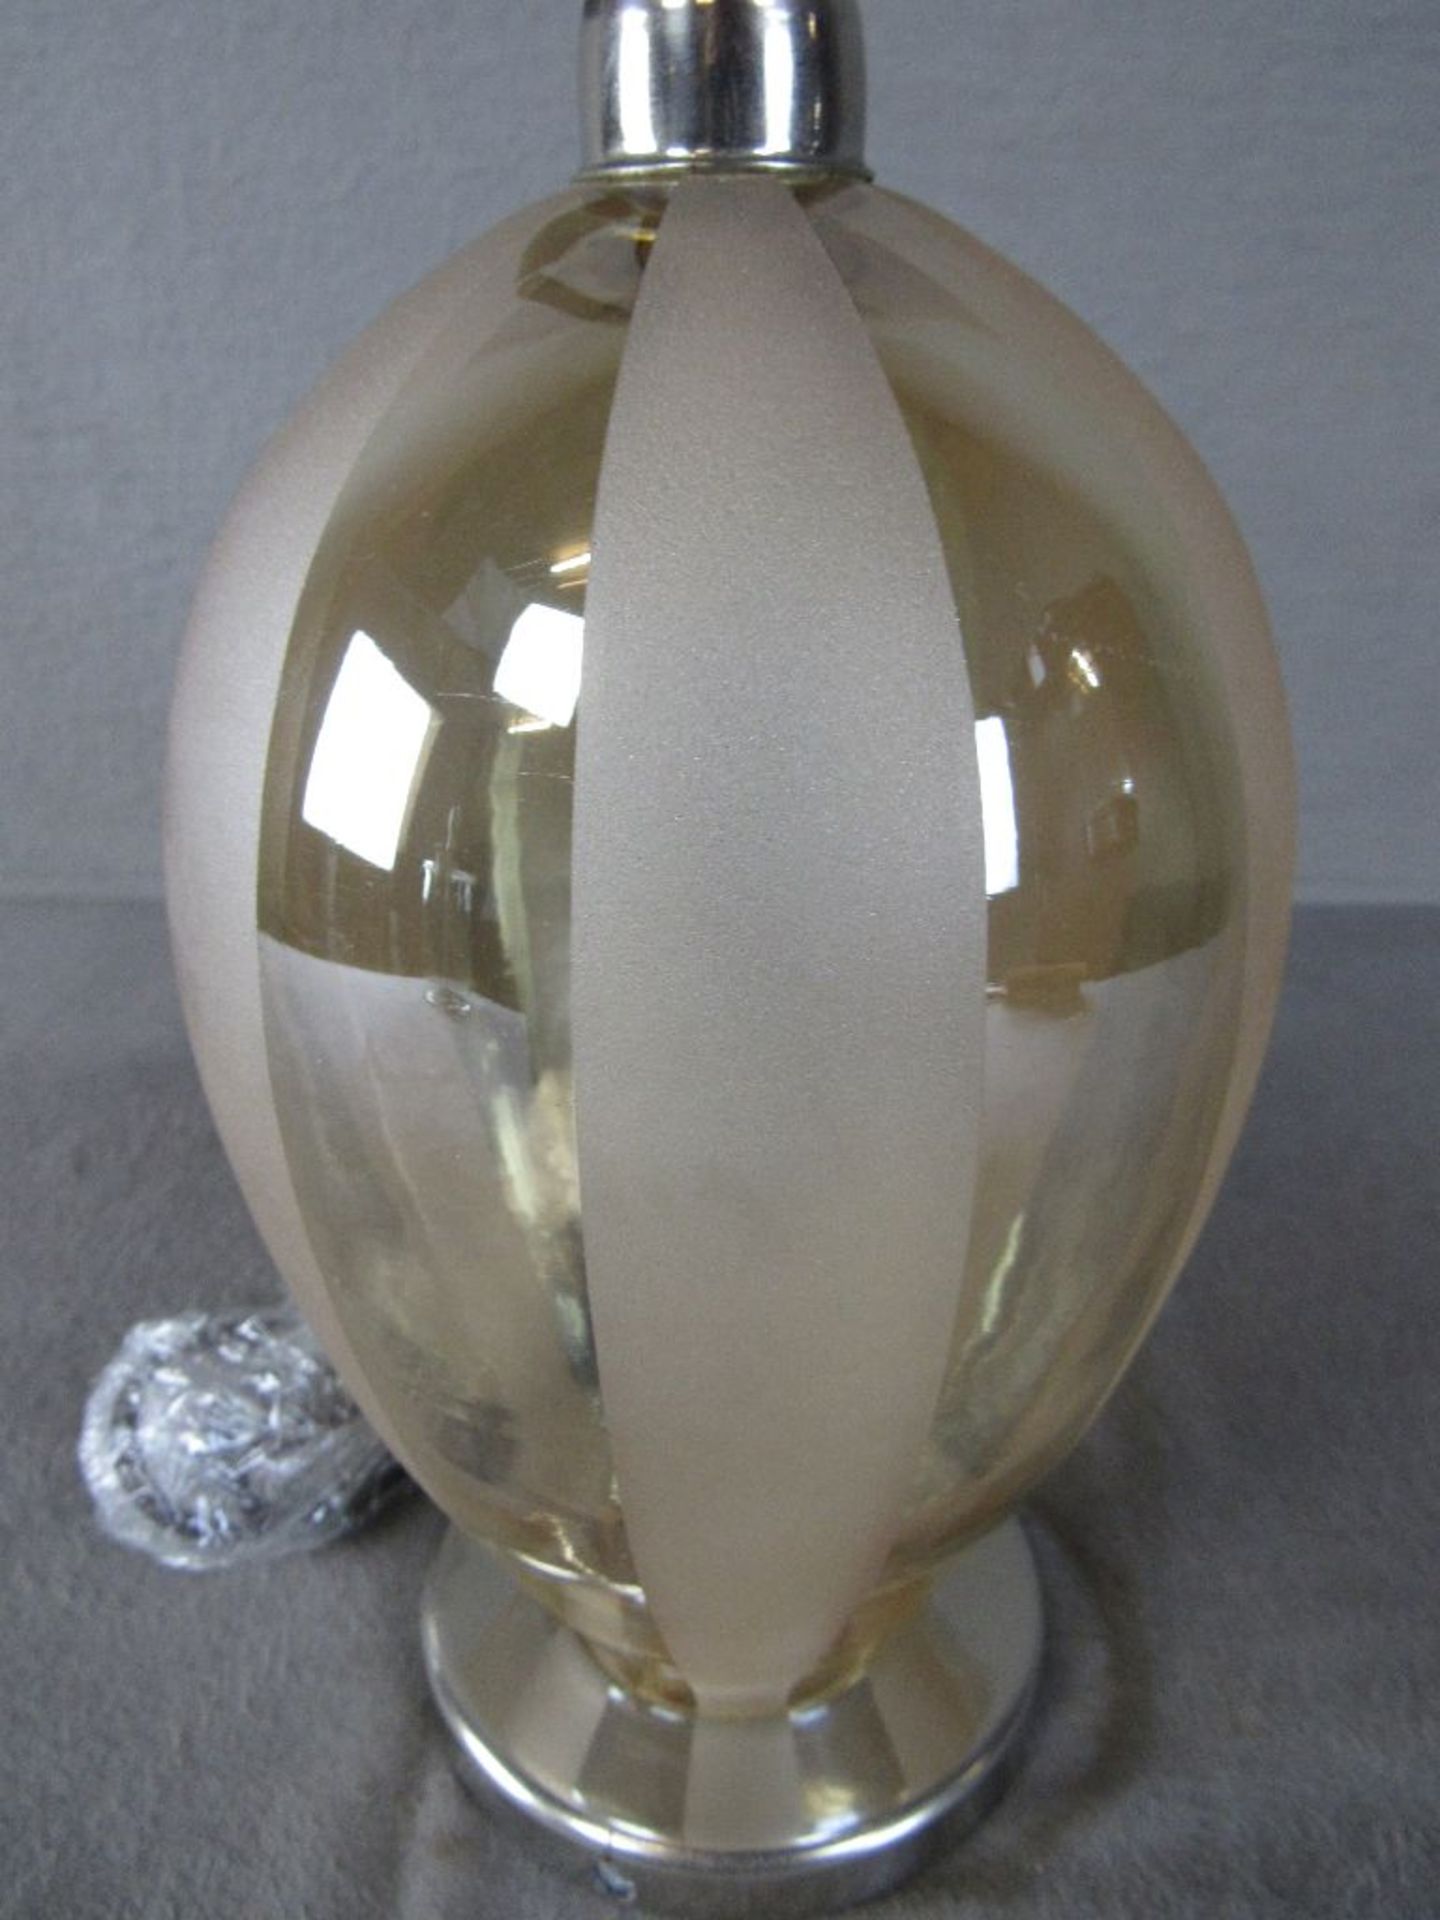 Tischlampe Art Deco Metall und Glaskorpus 46cm hoch - Image 2 of 5